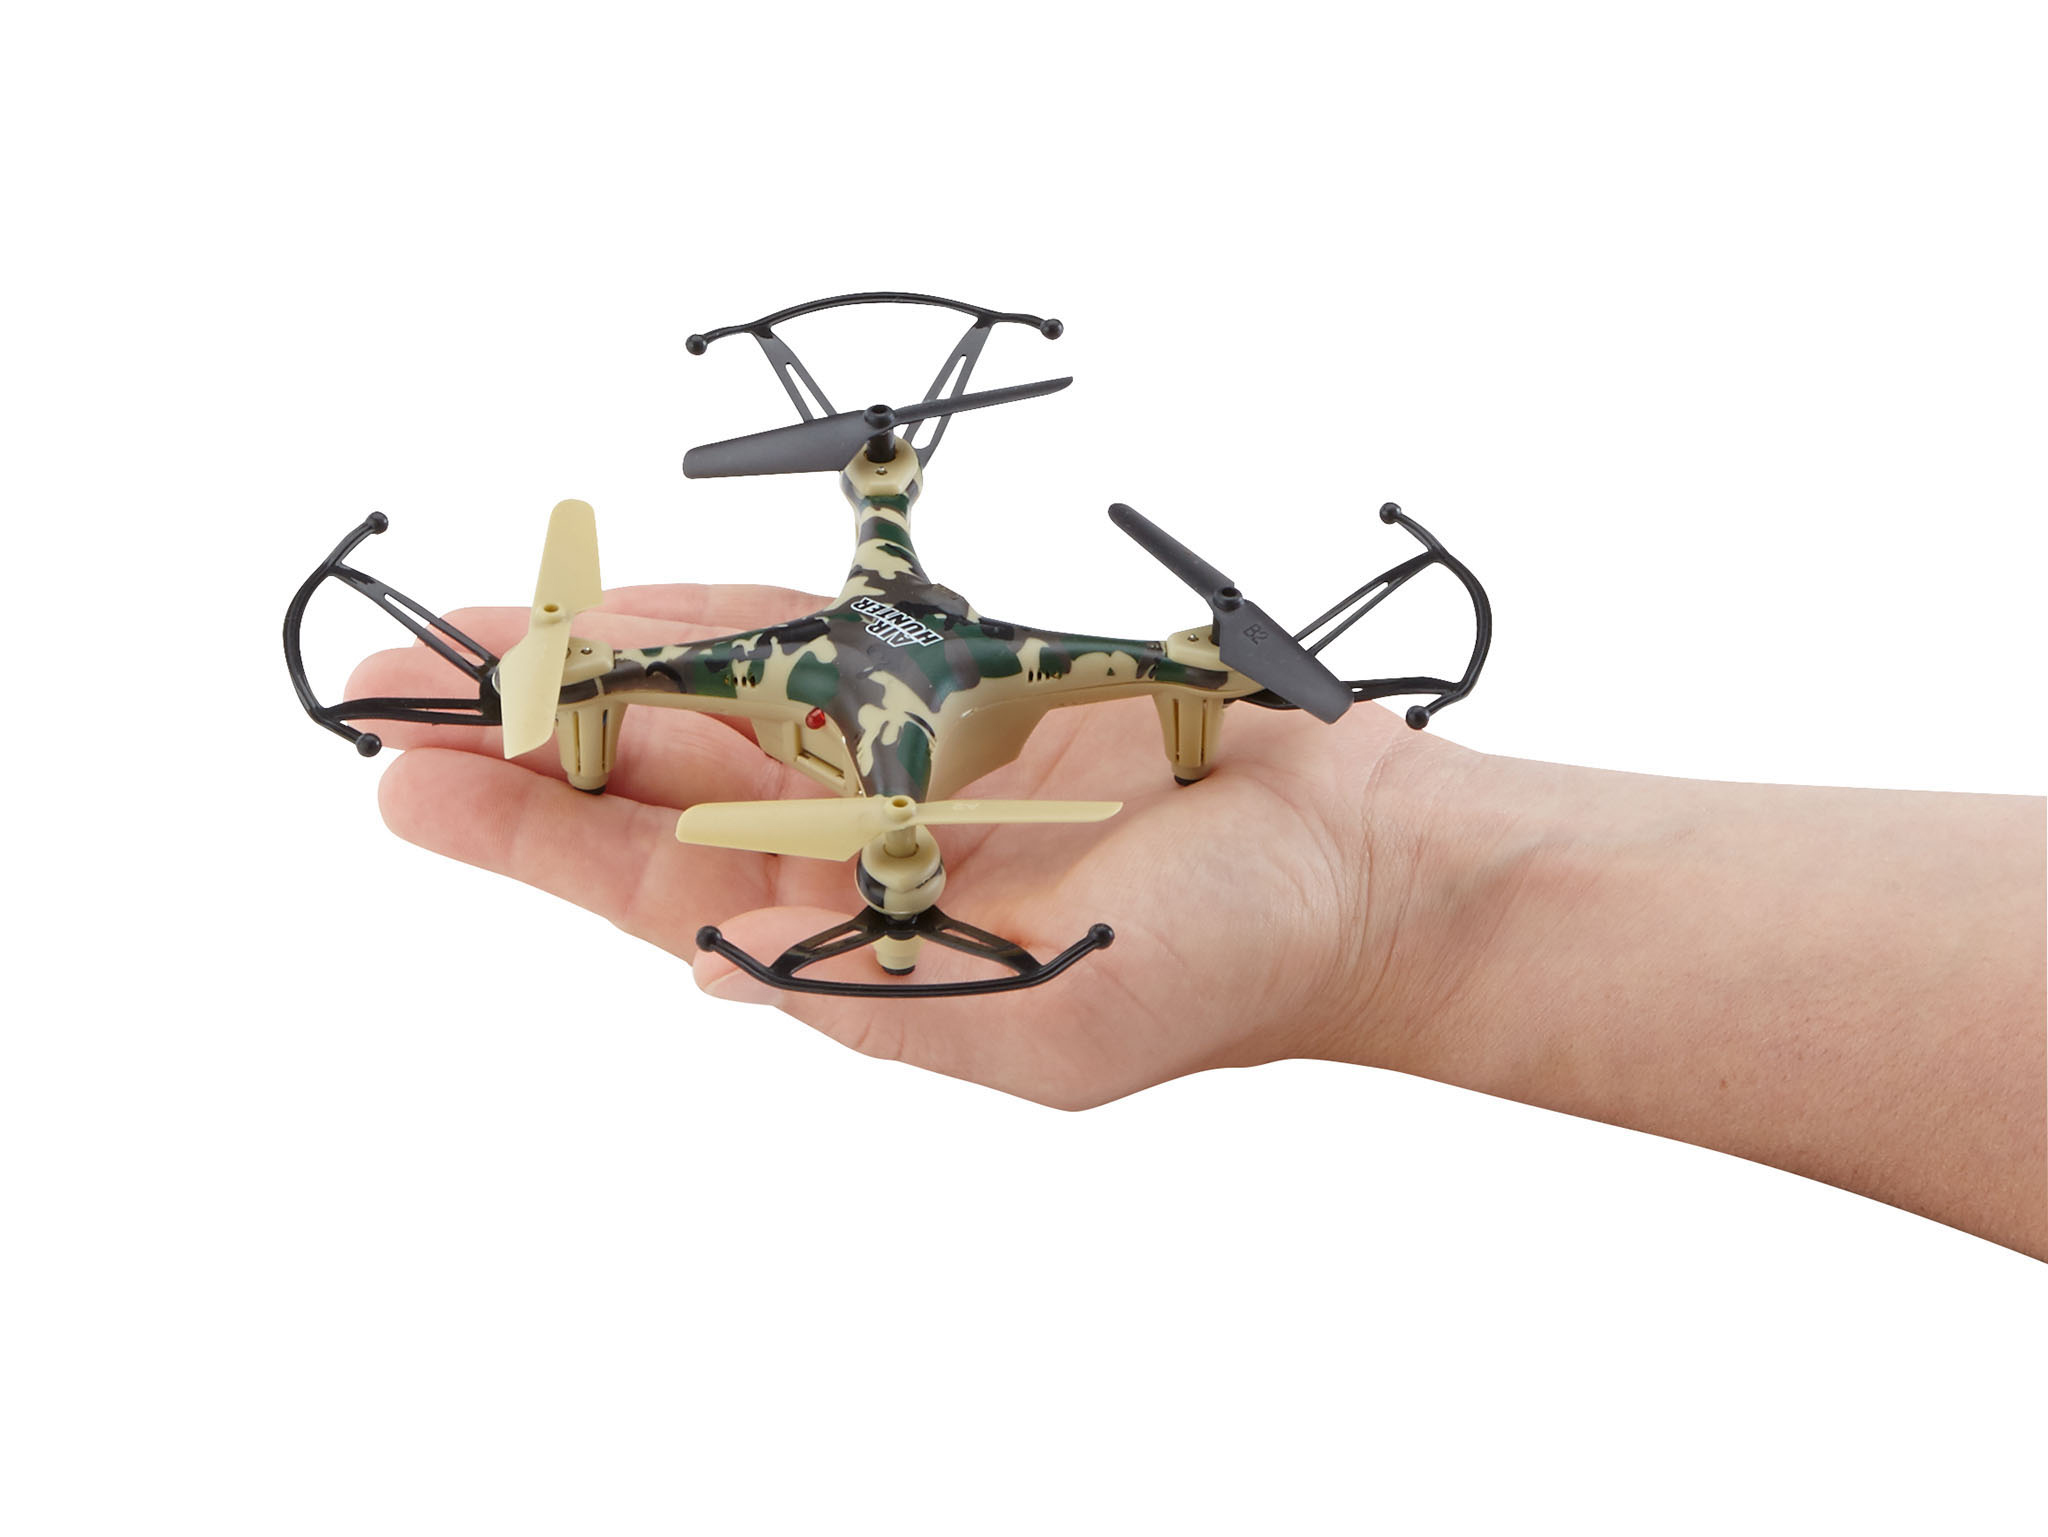 REVELL Quadcopter Air Hunter Mehrfarbig Drohne